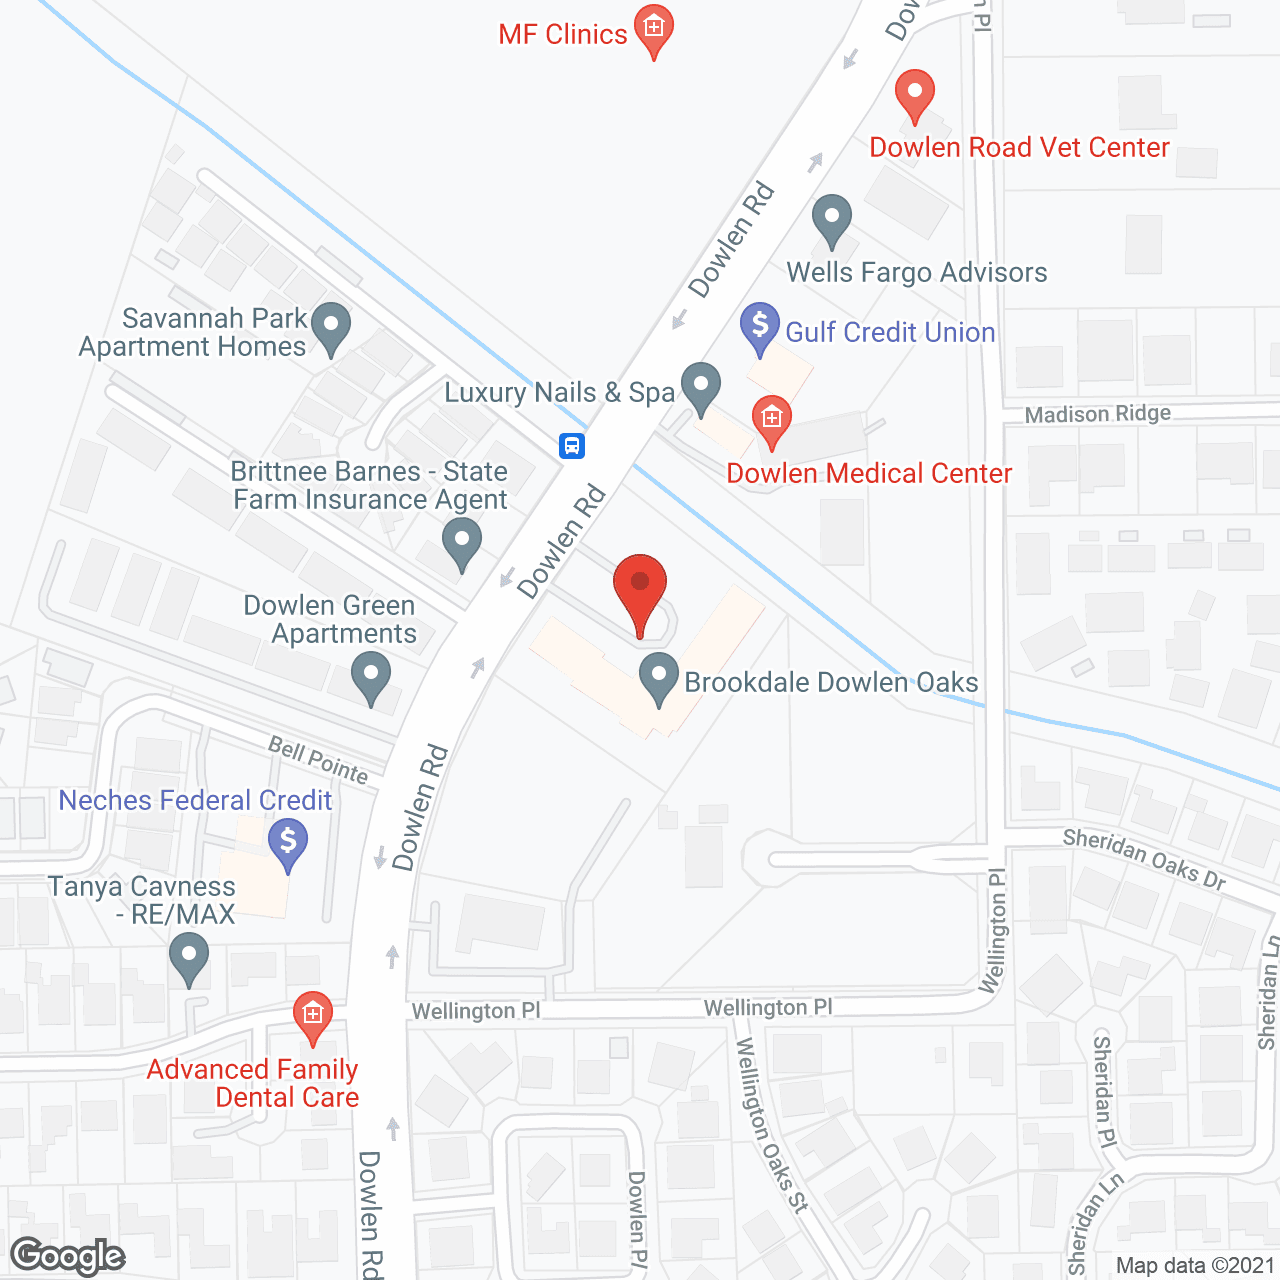 Brookdale Dowlen Oaks in google map